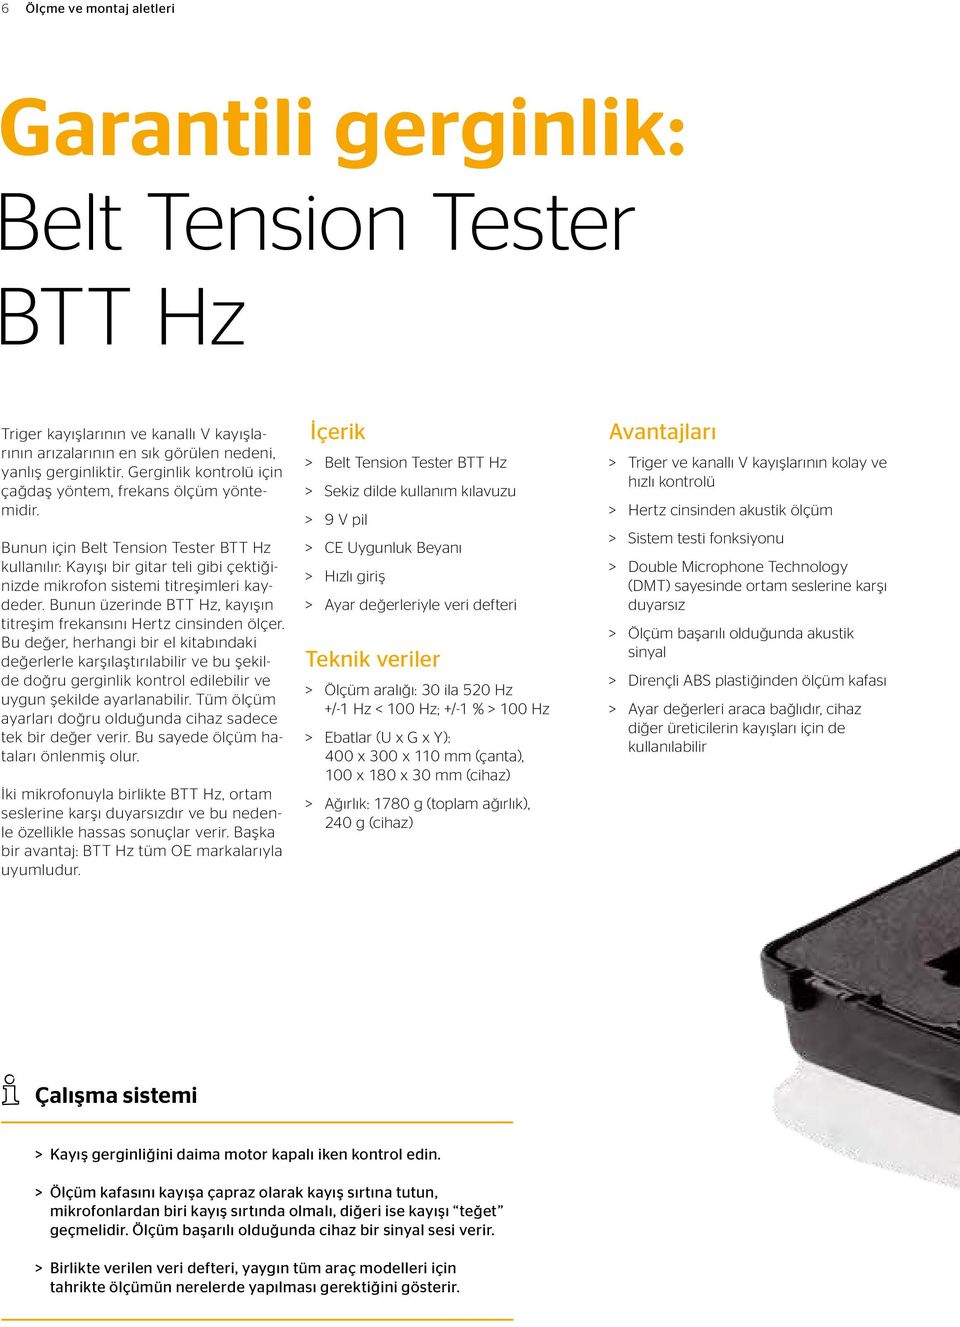 Bunun üzerinde BTT Hz, kayışın titreşim frekansını Hertz cinsinden ölçer.